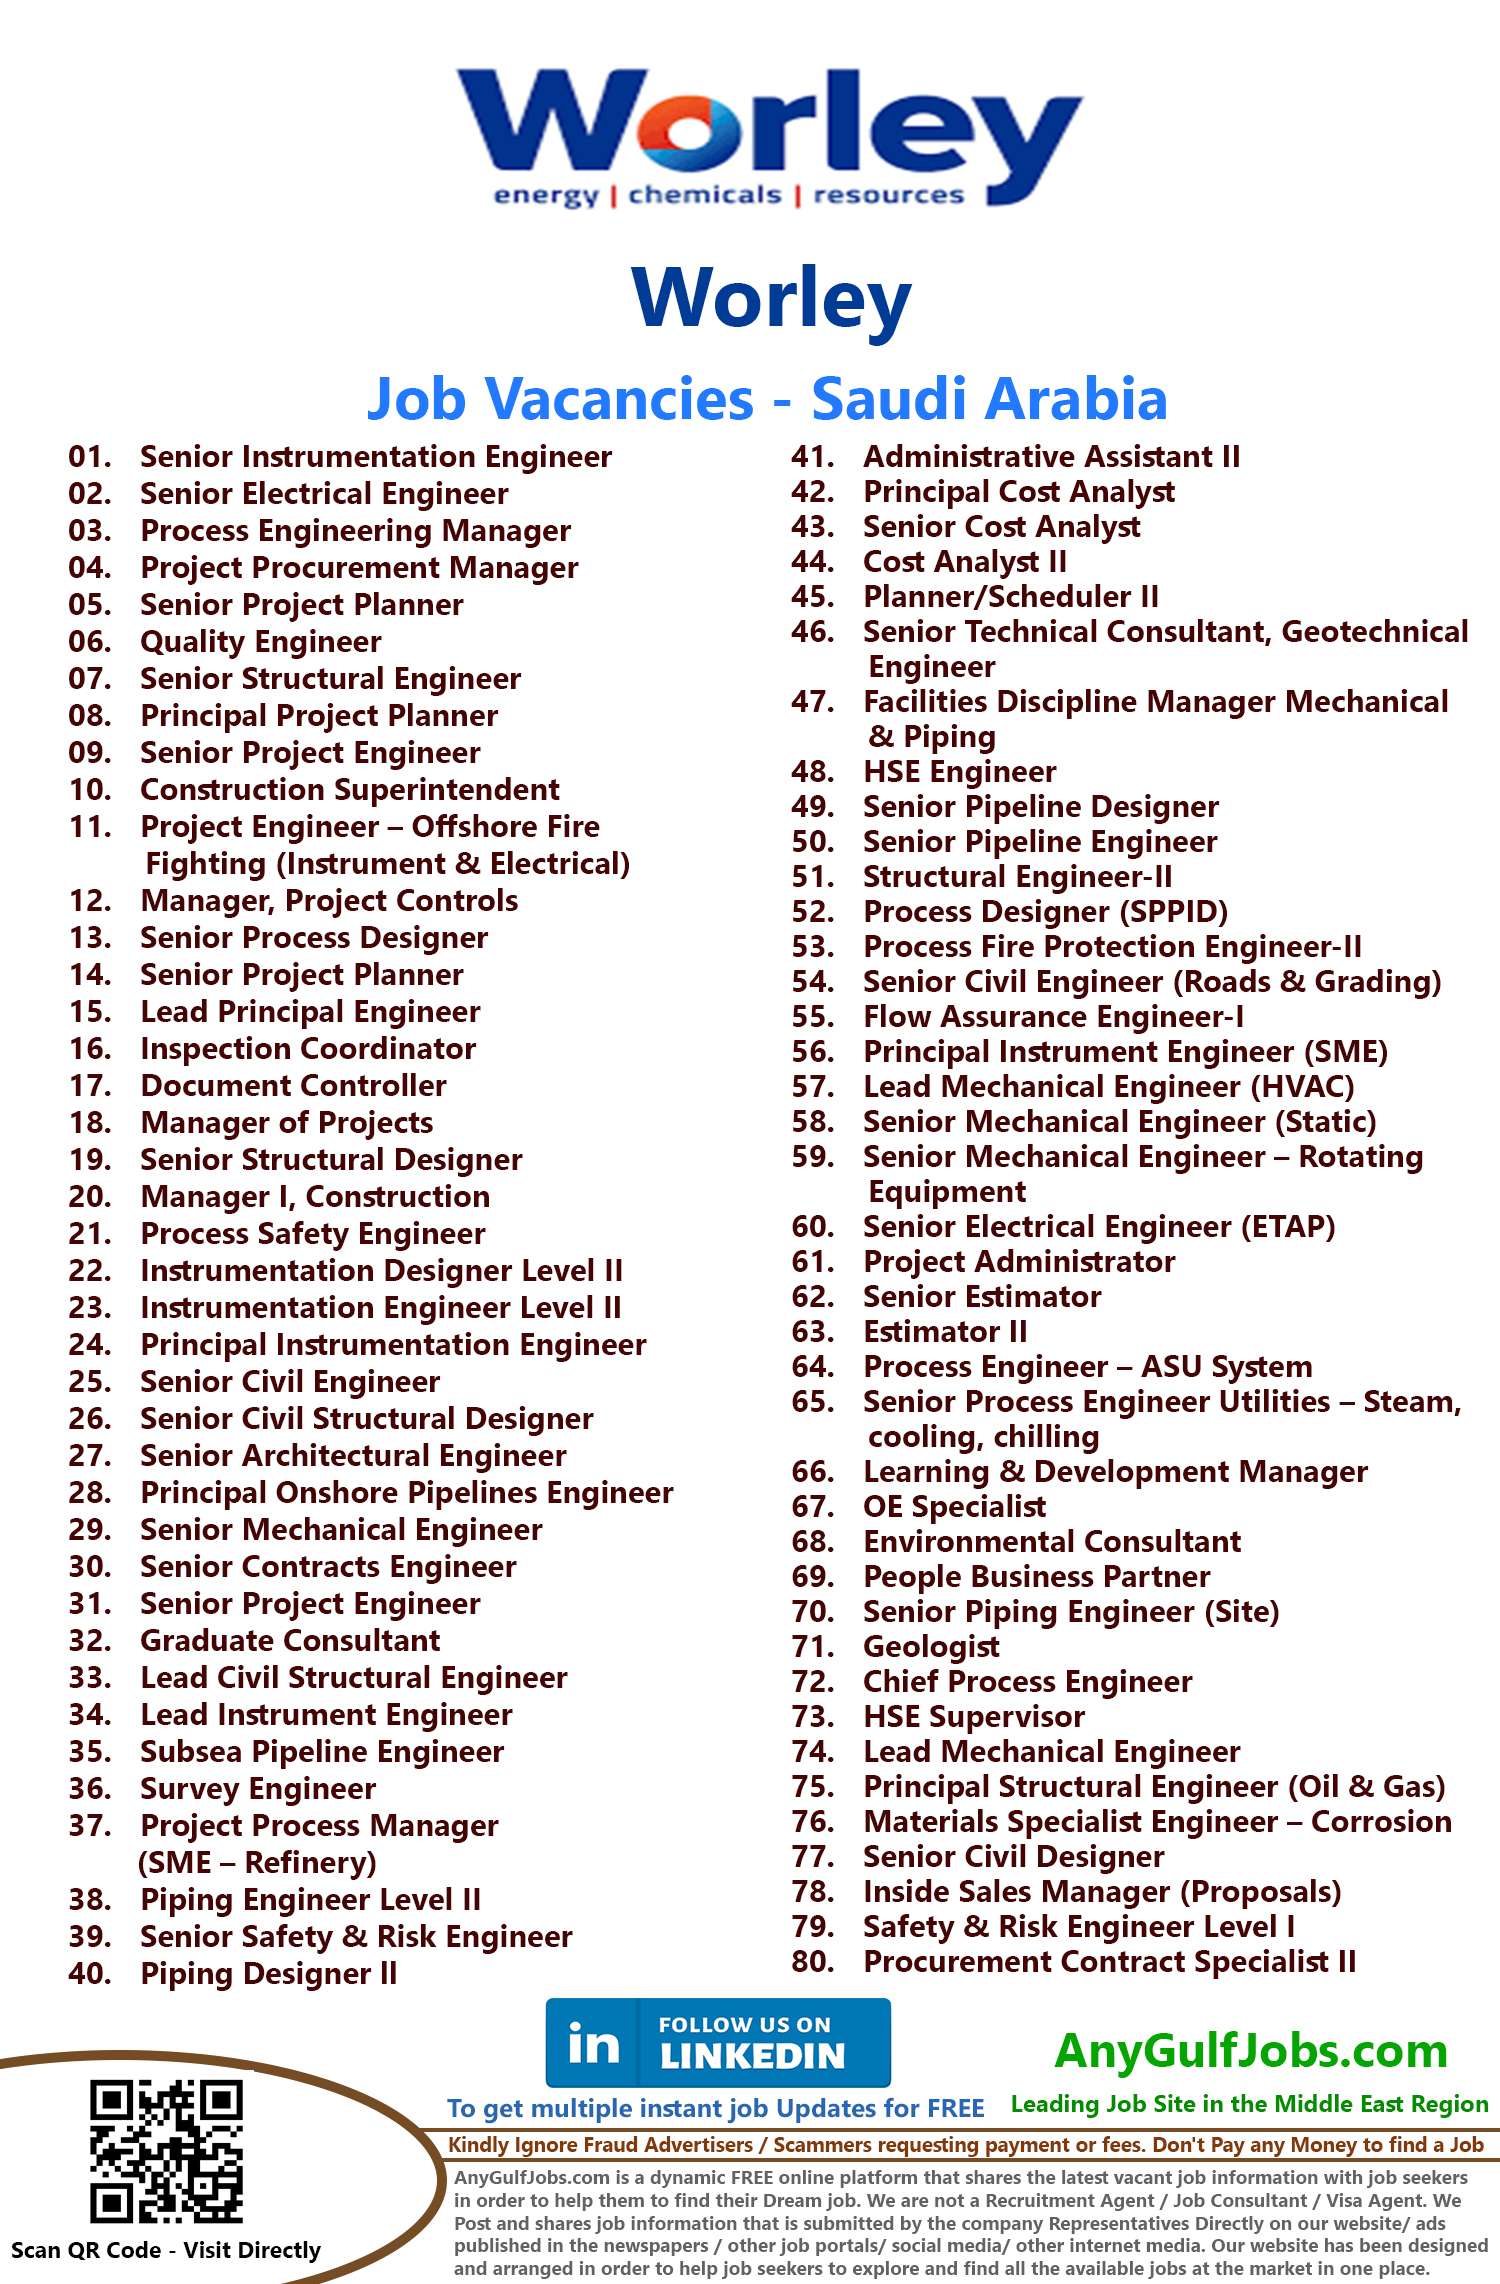 List of Worley Jobs - Saudi Arabia